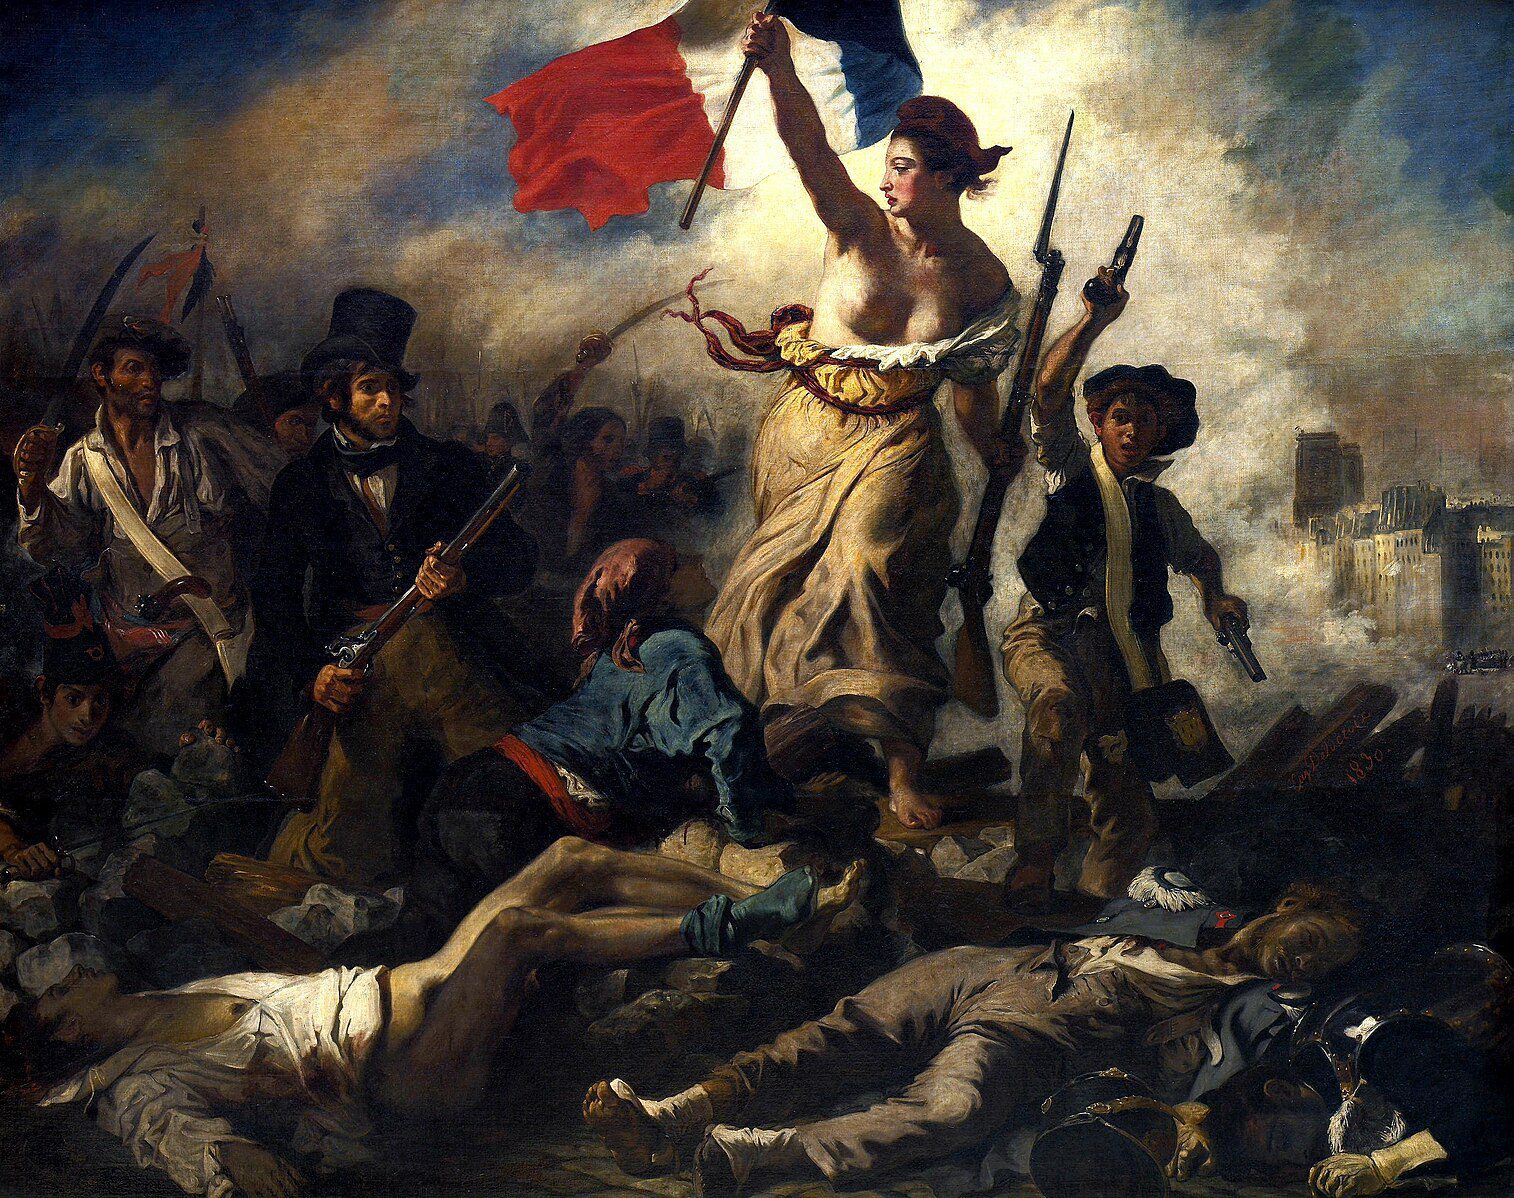 Eugène Delacroix, "Liberty leading the people" (1830)